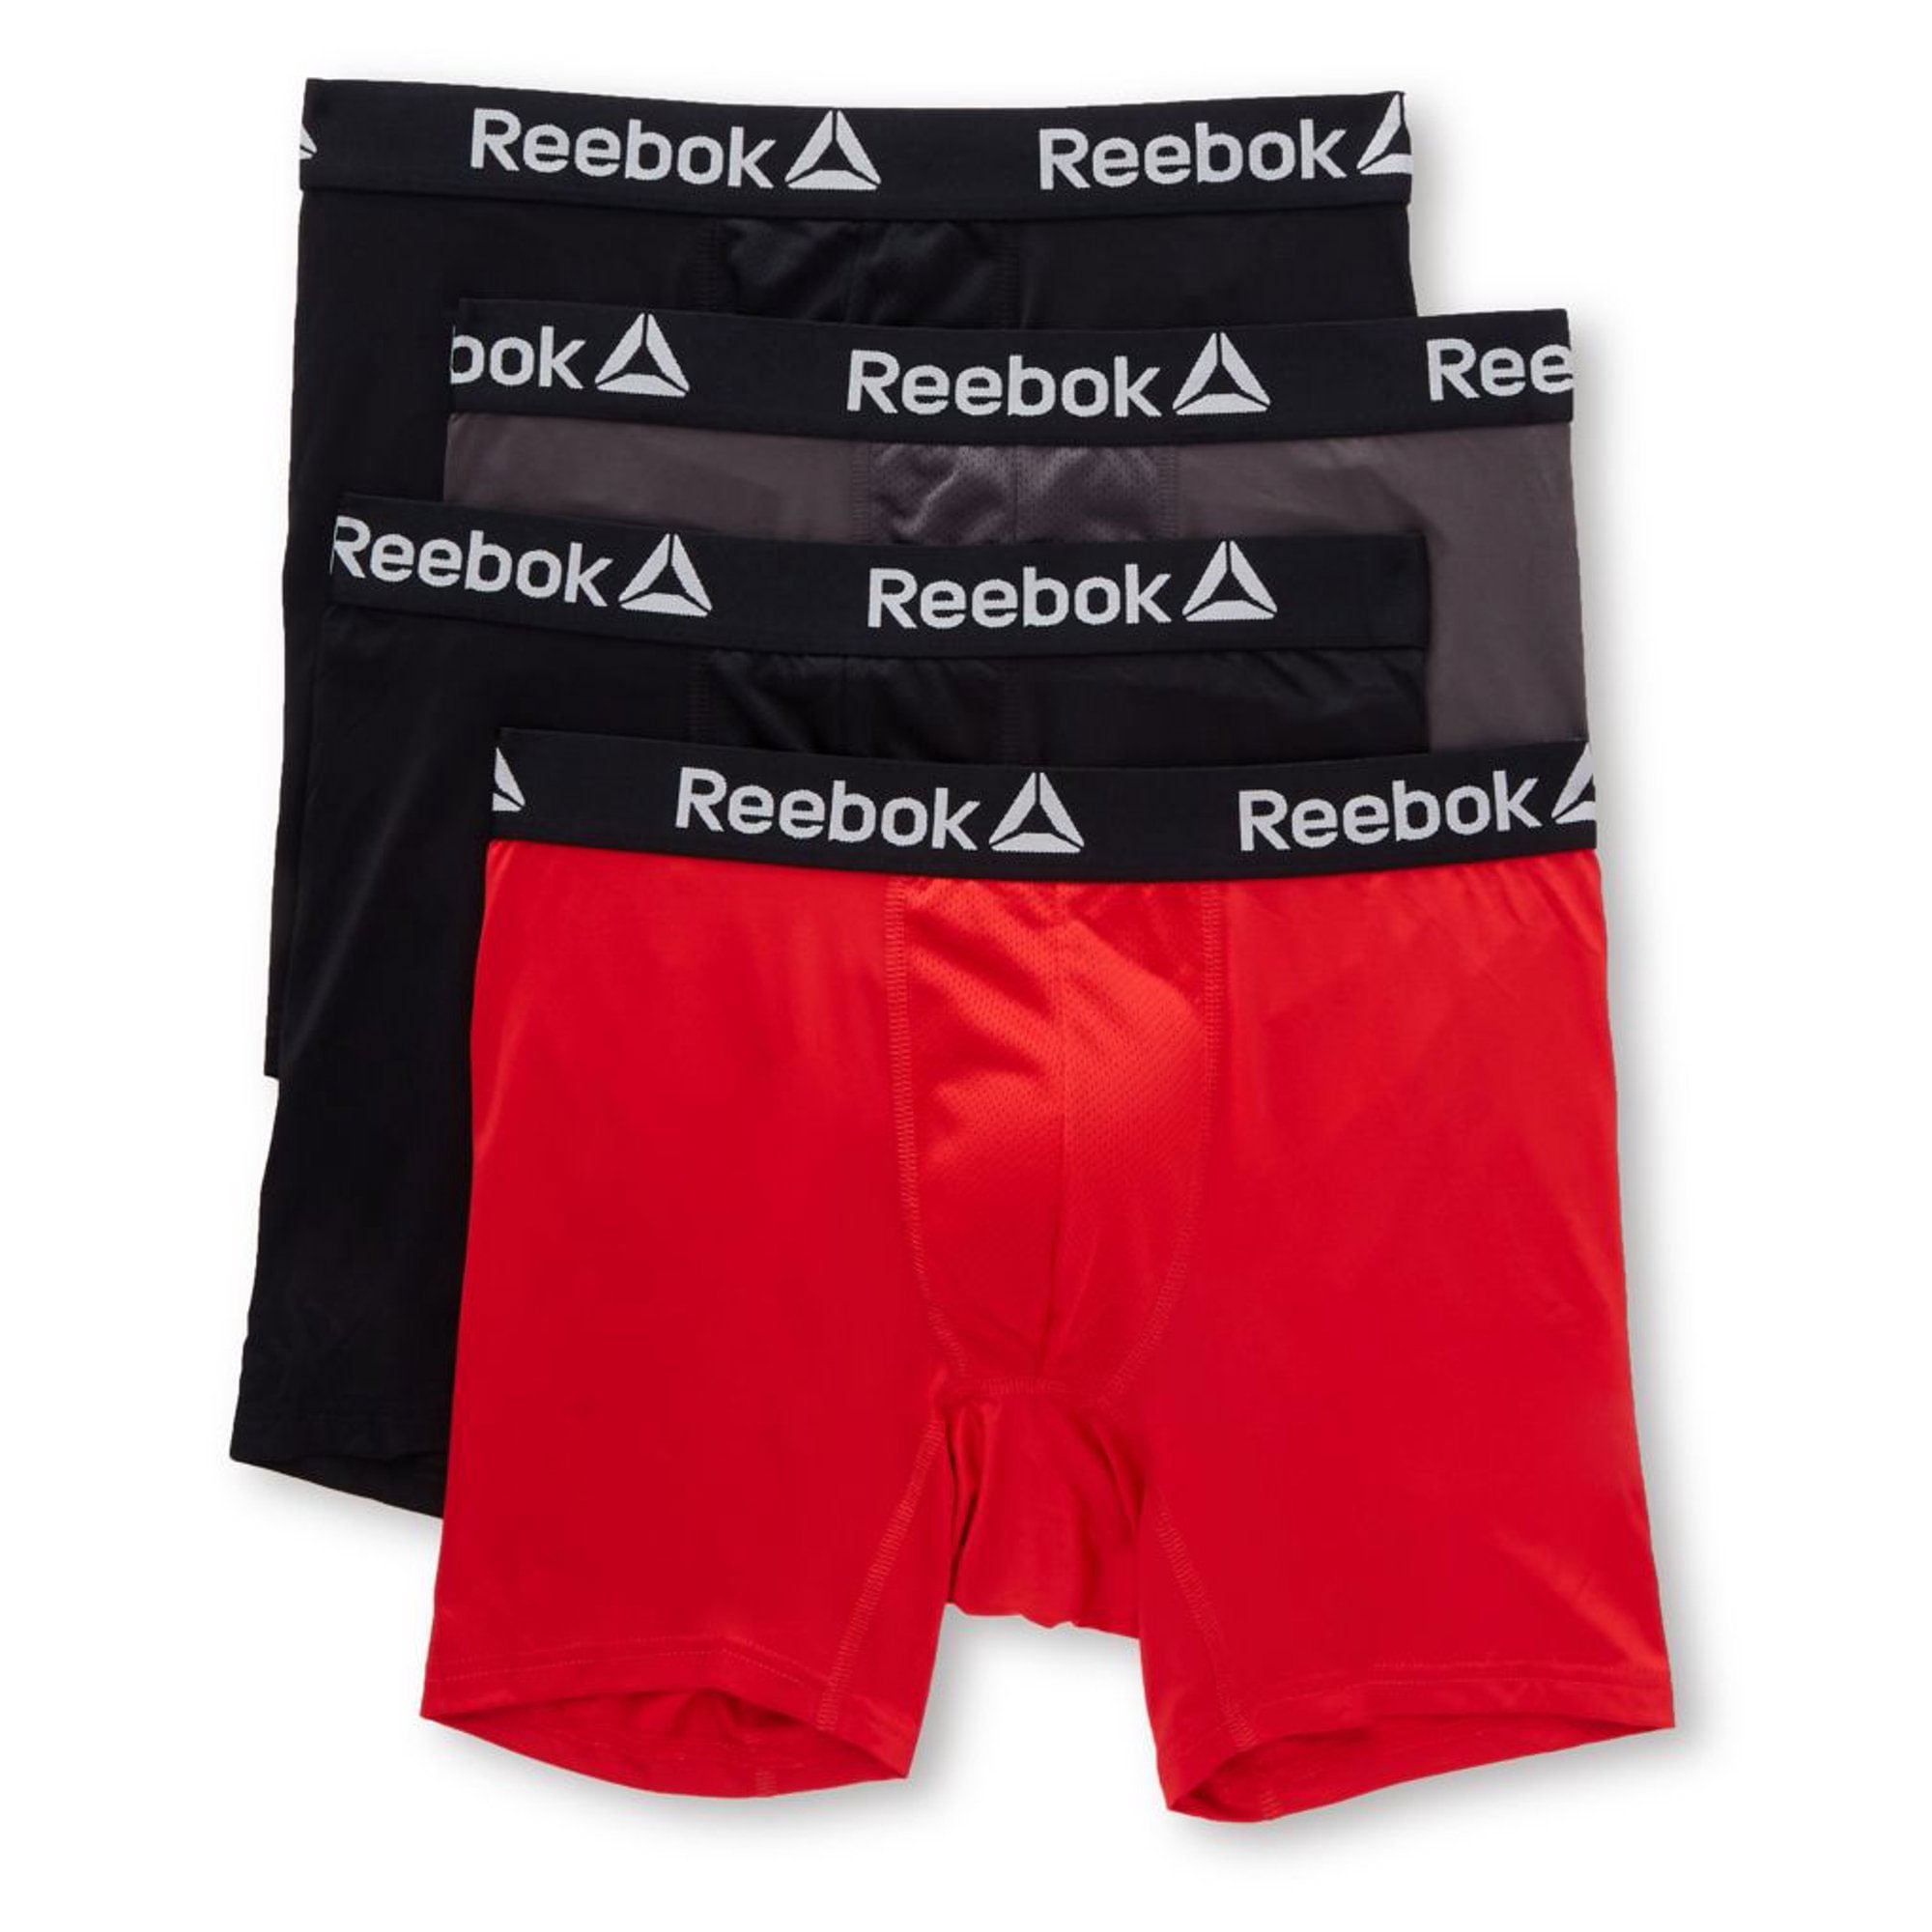 Reebok Men's Active Underwear Sport Soft Performance Boxer Briefs 4 Pack